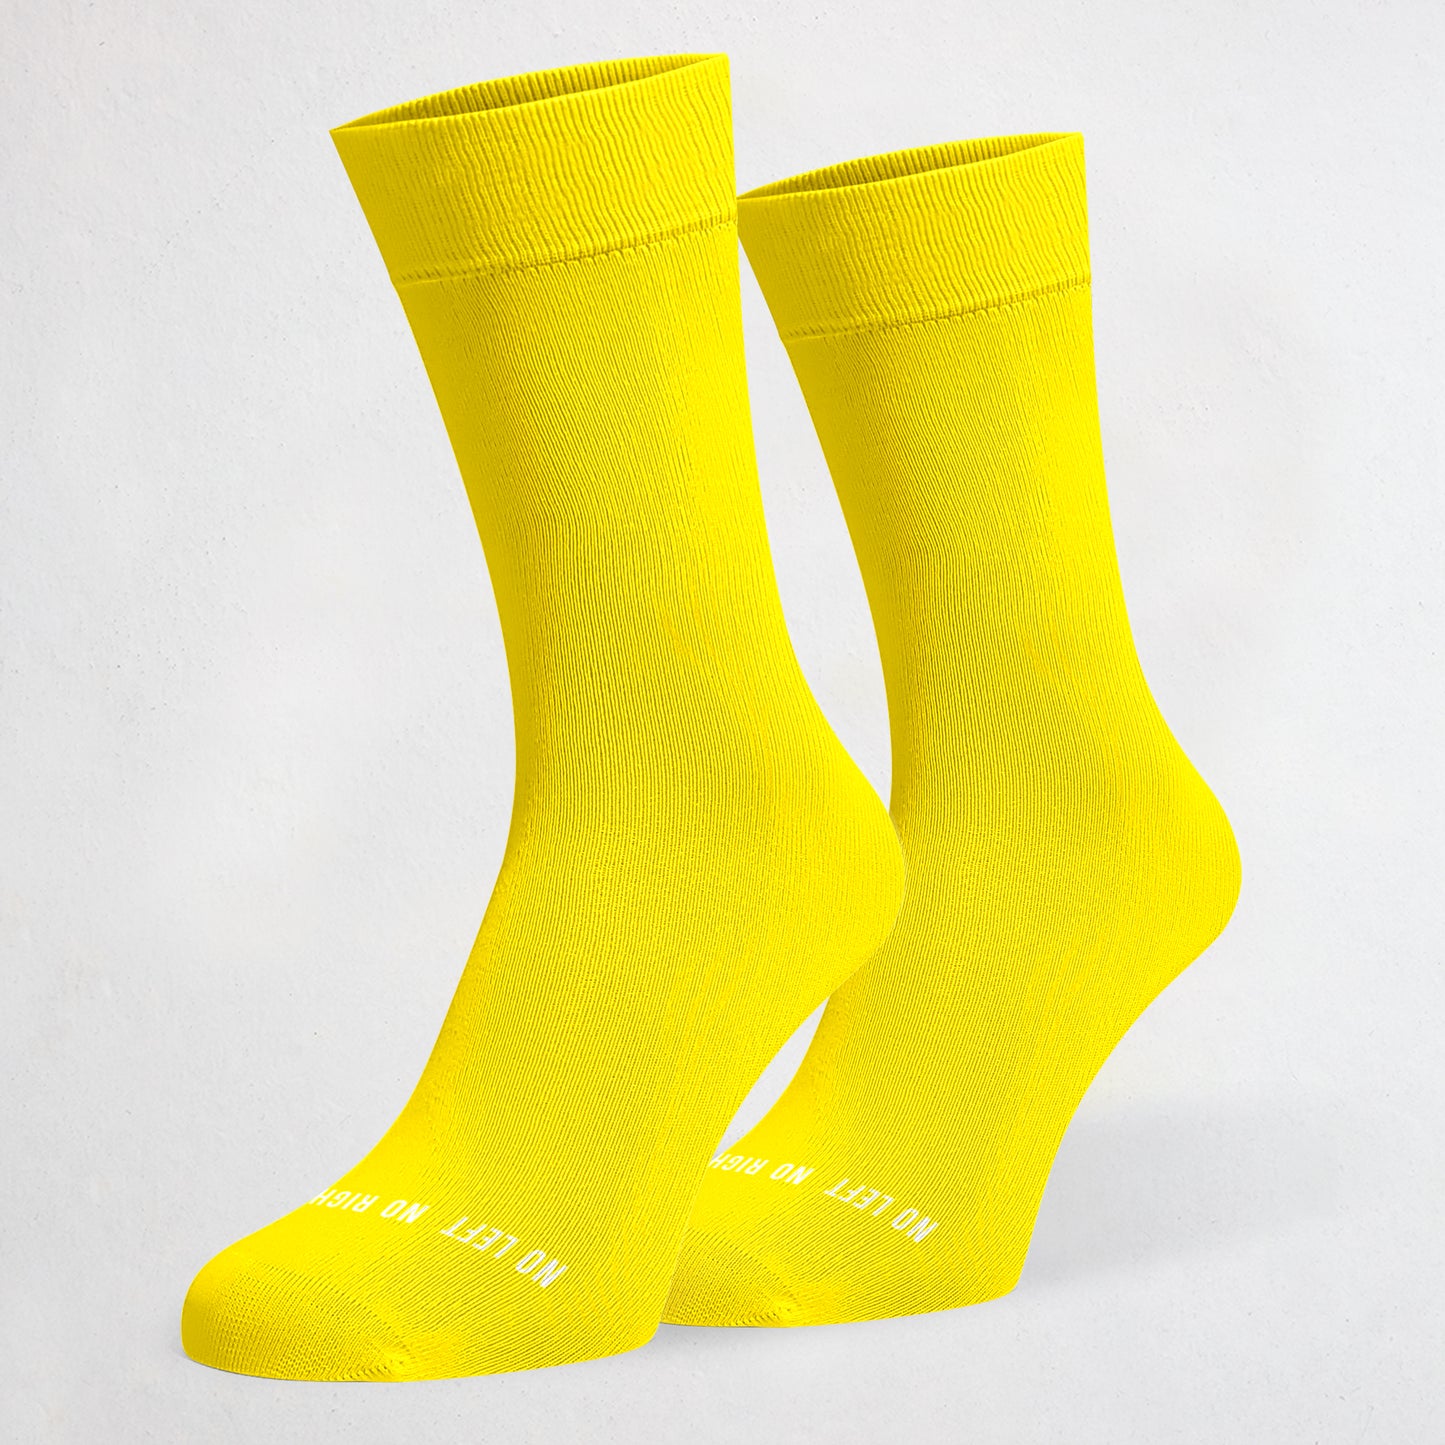 Twin Yellow Socks